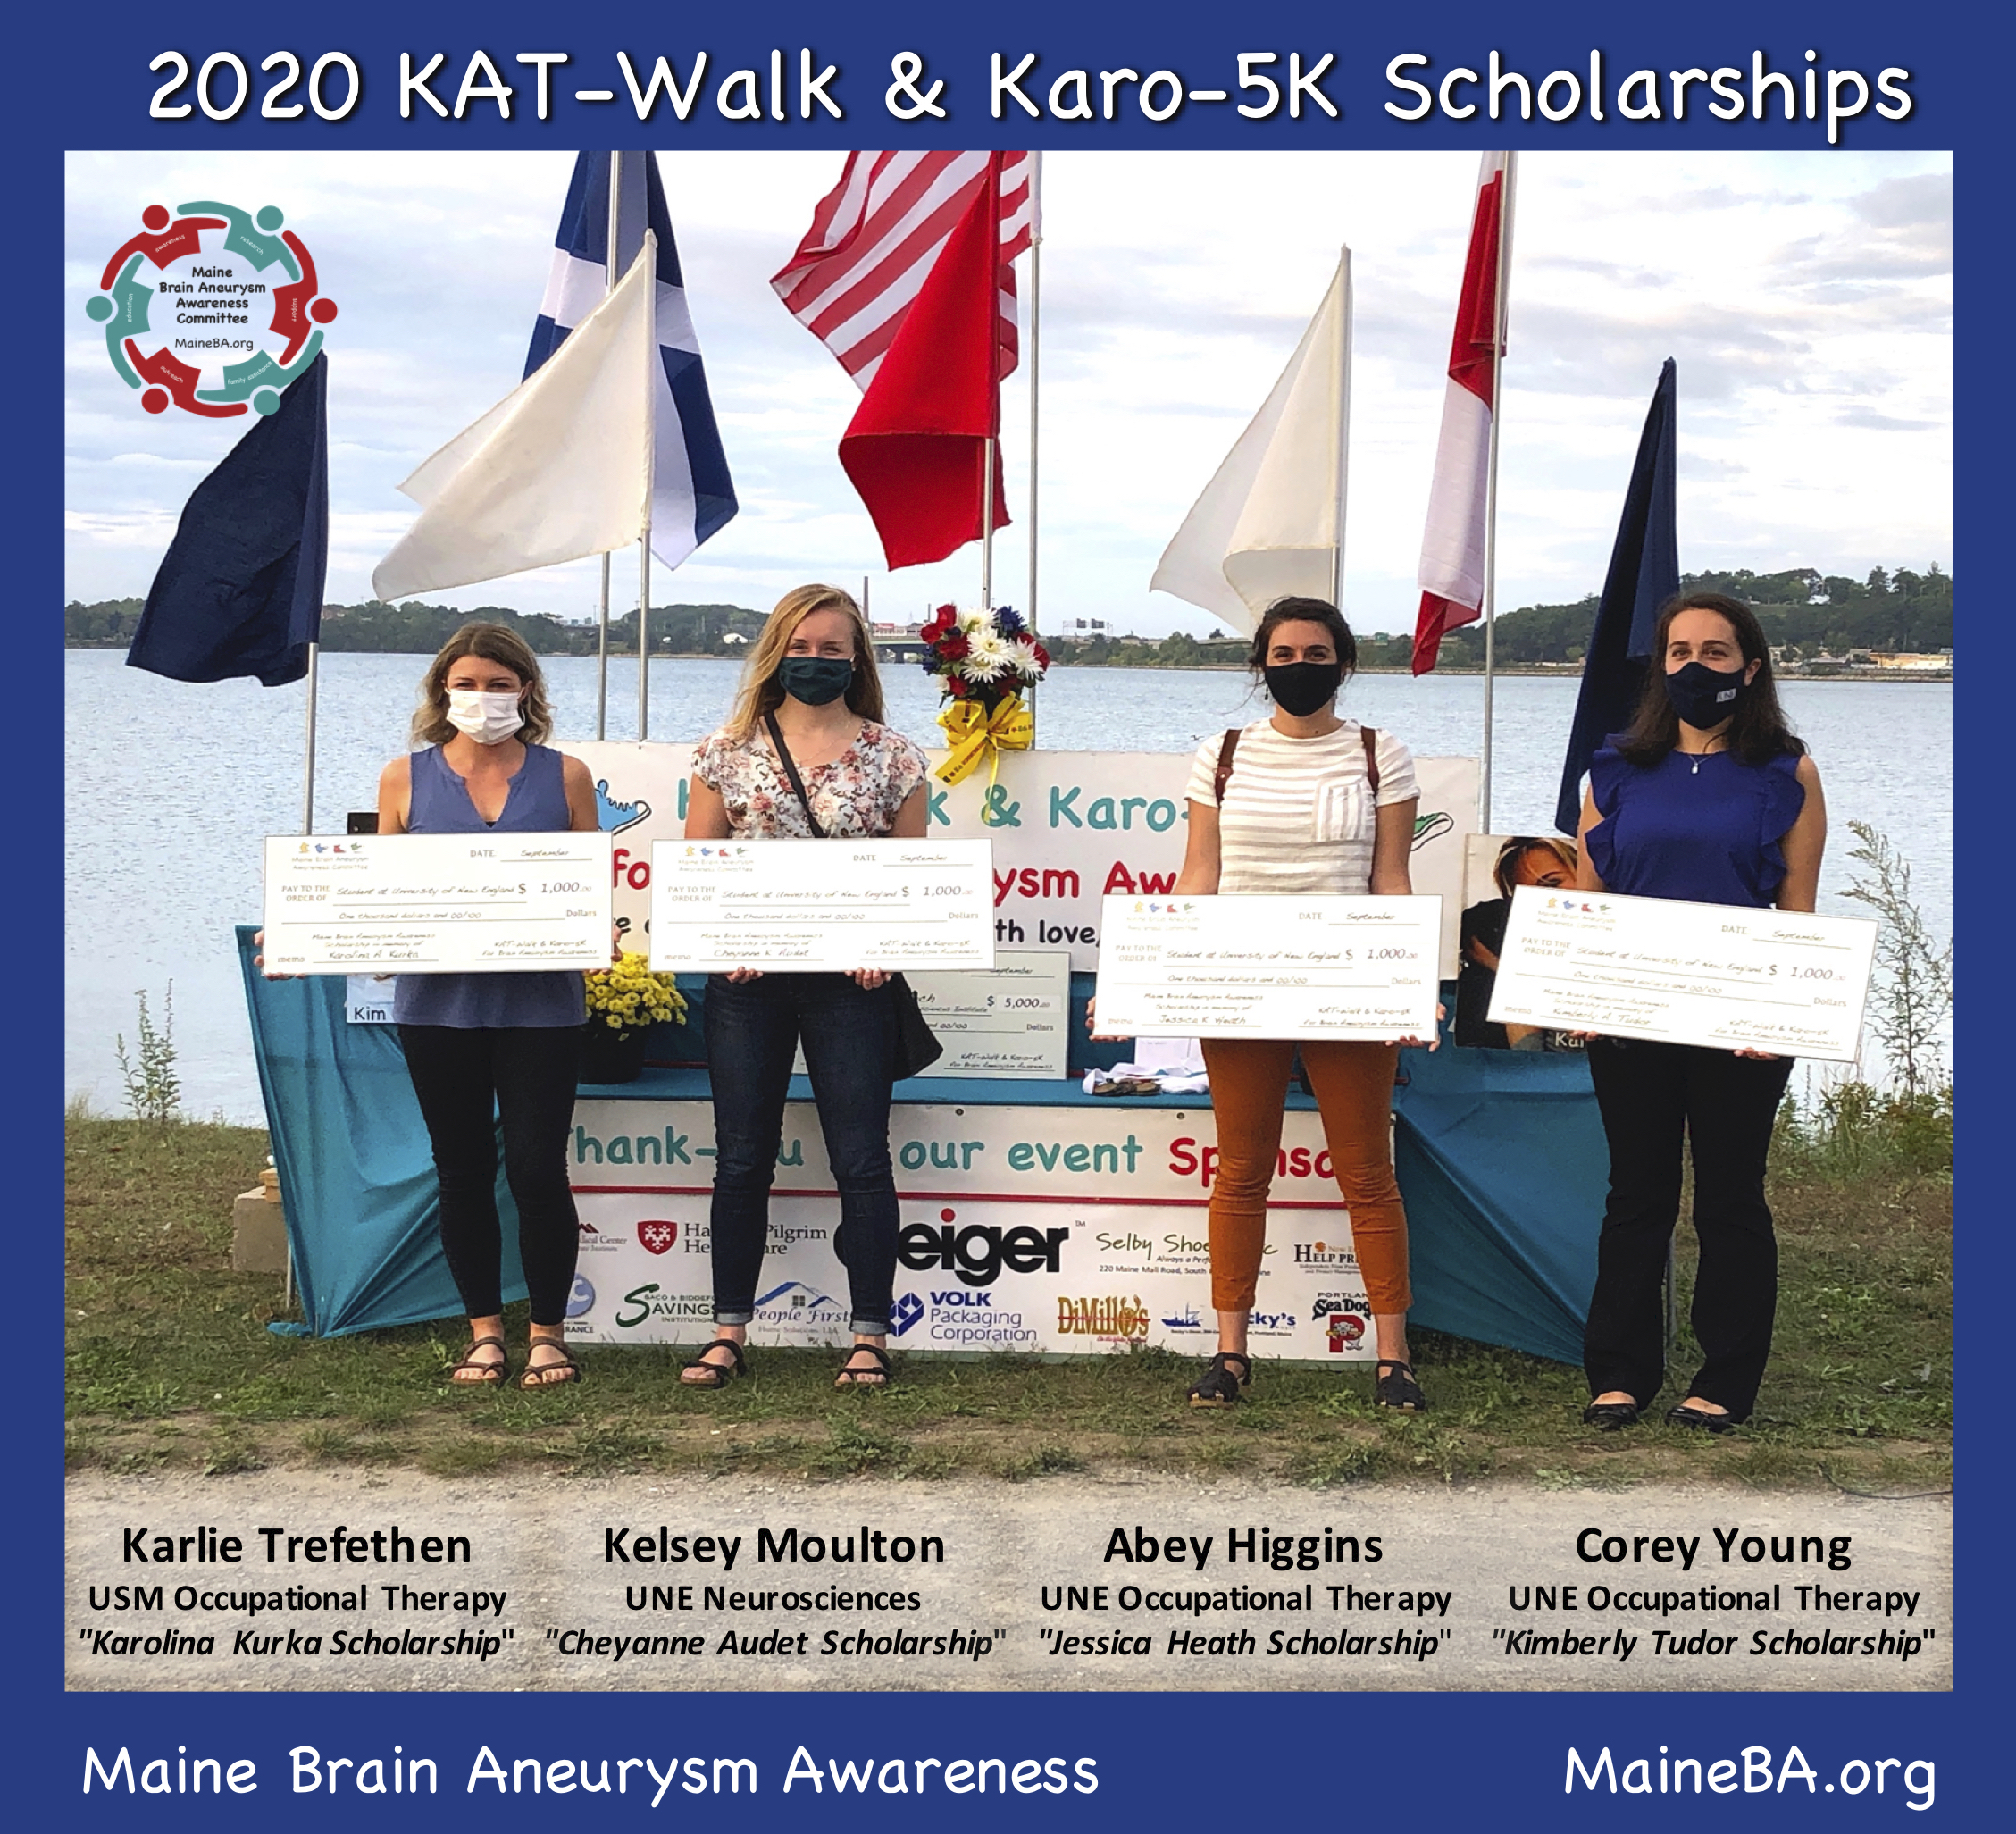 2020 Katwalk and karo-5k scholarship winners